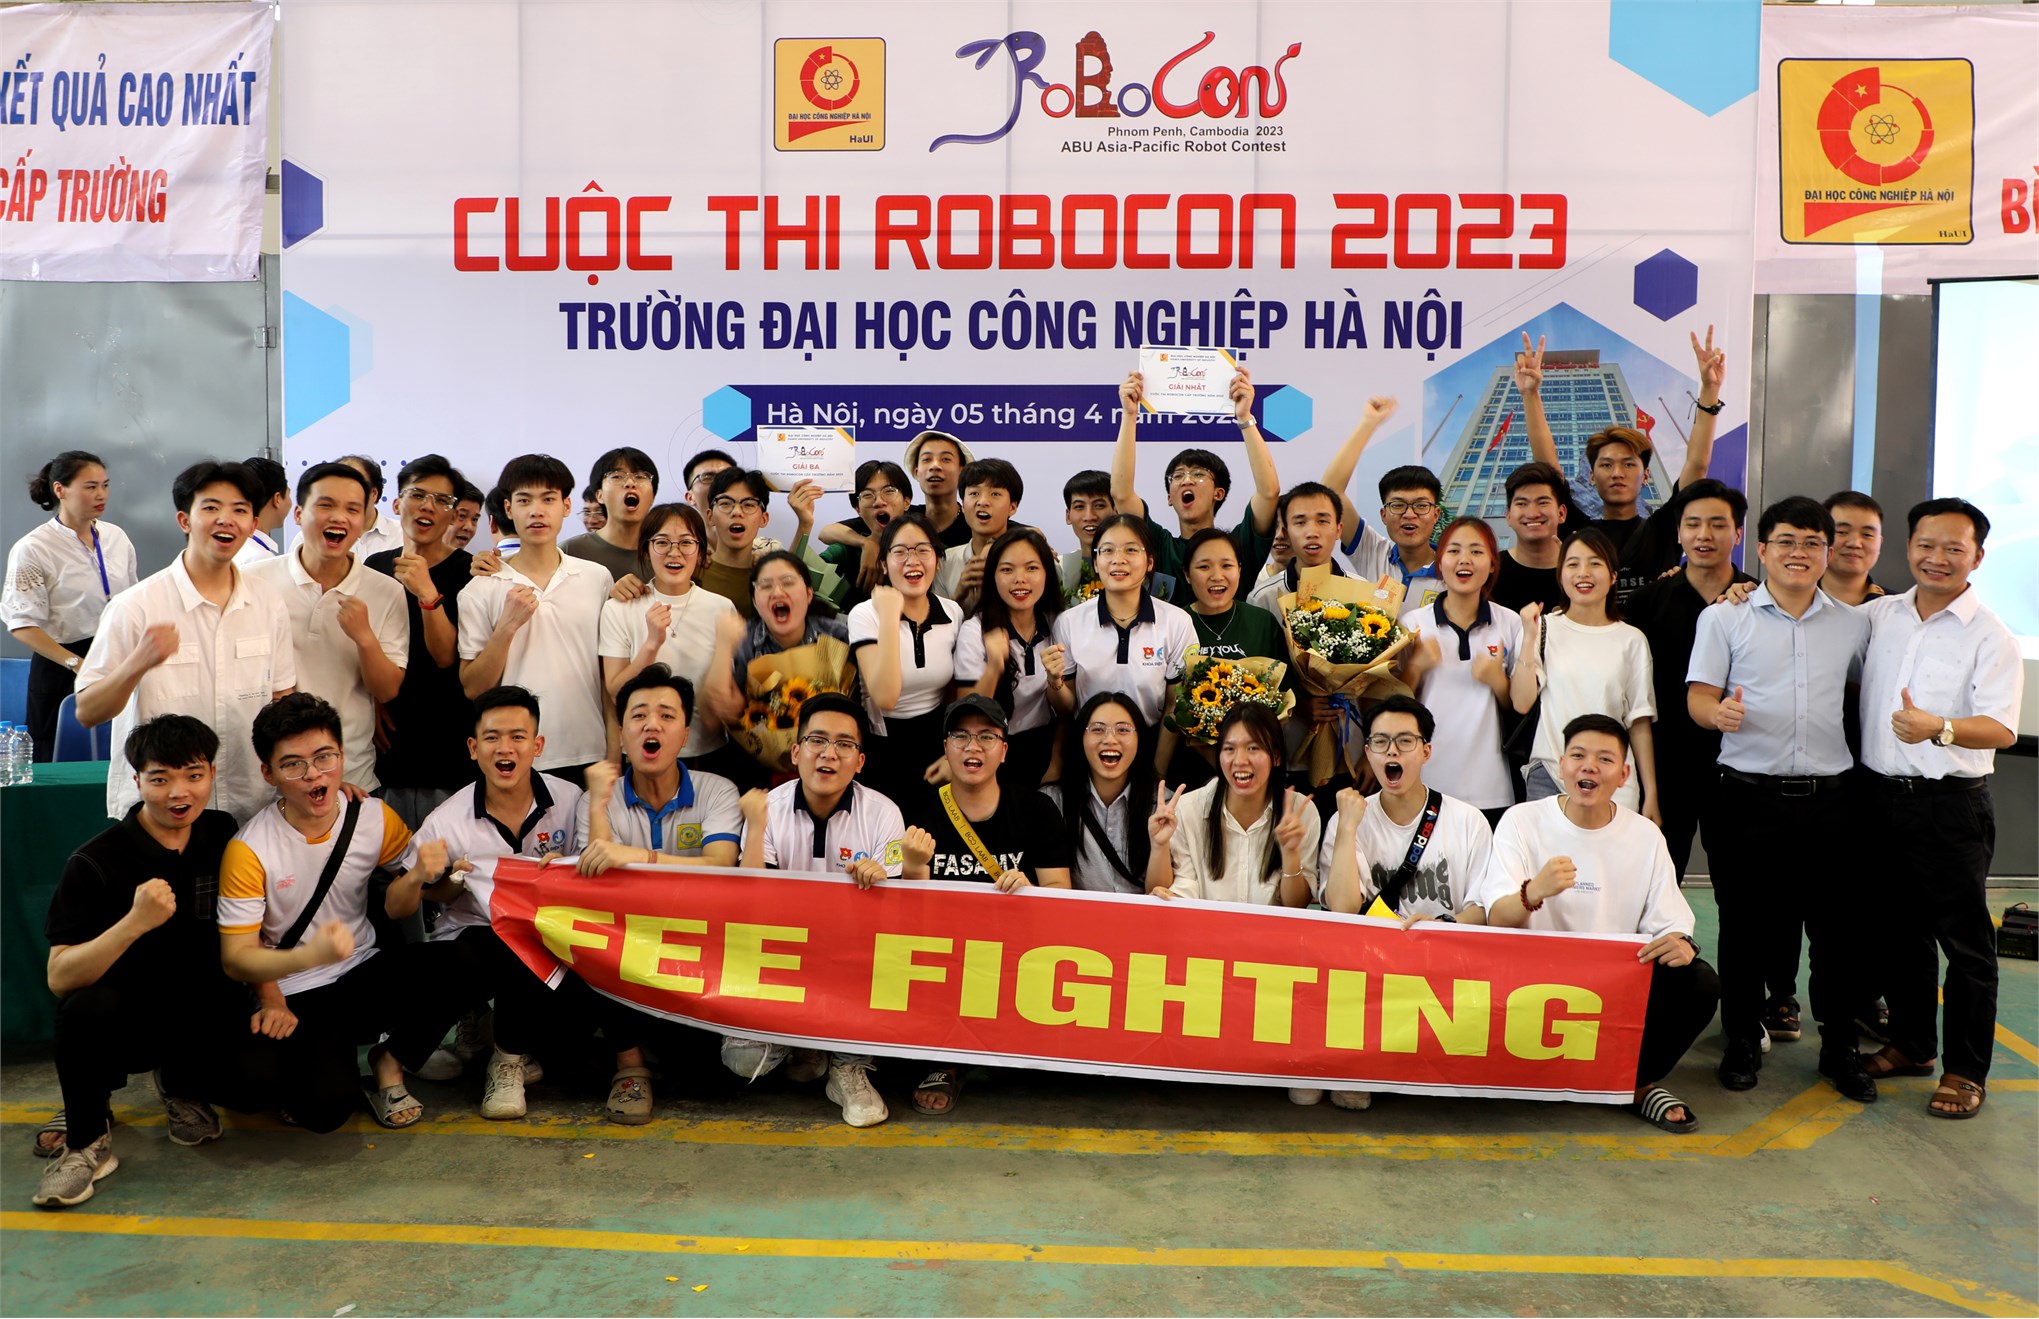 ĐT2-HaUI đạt giải Nhất cuộc thi robocon cấp Trường năm 2023